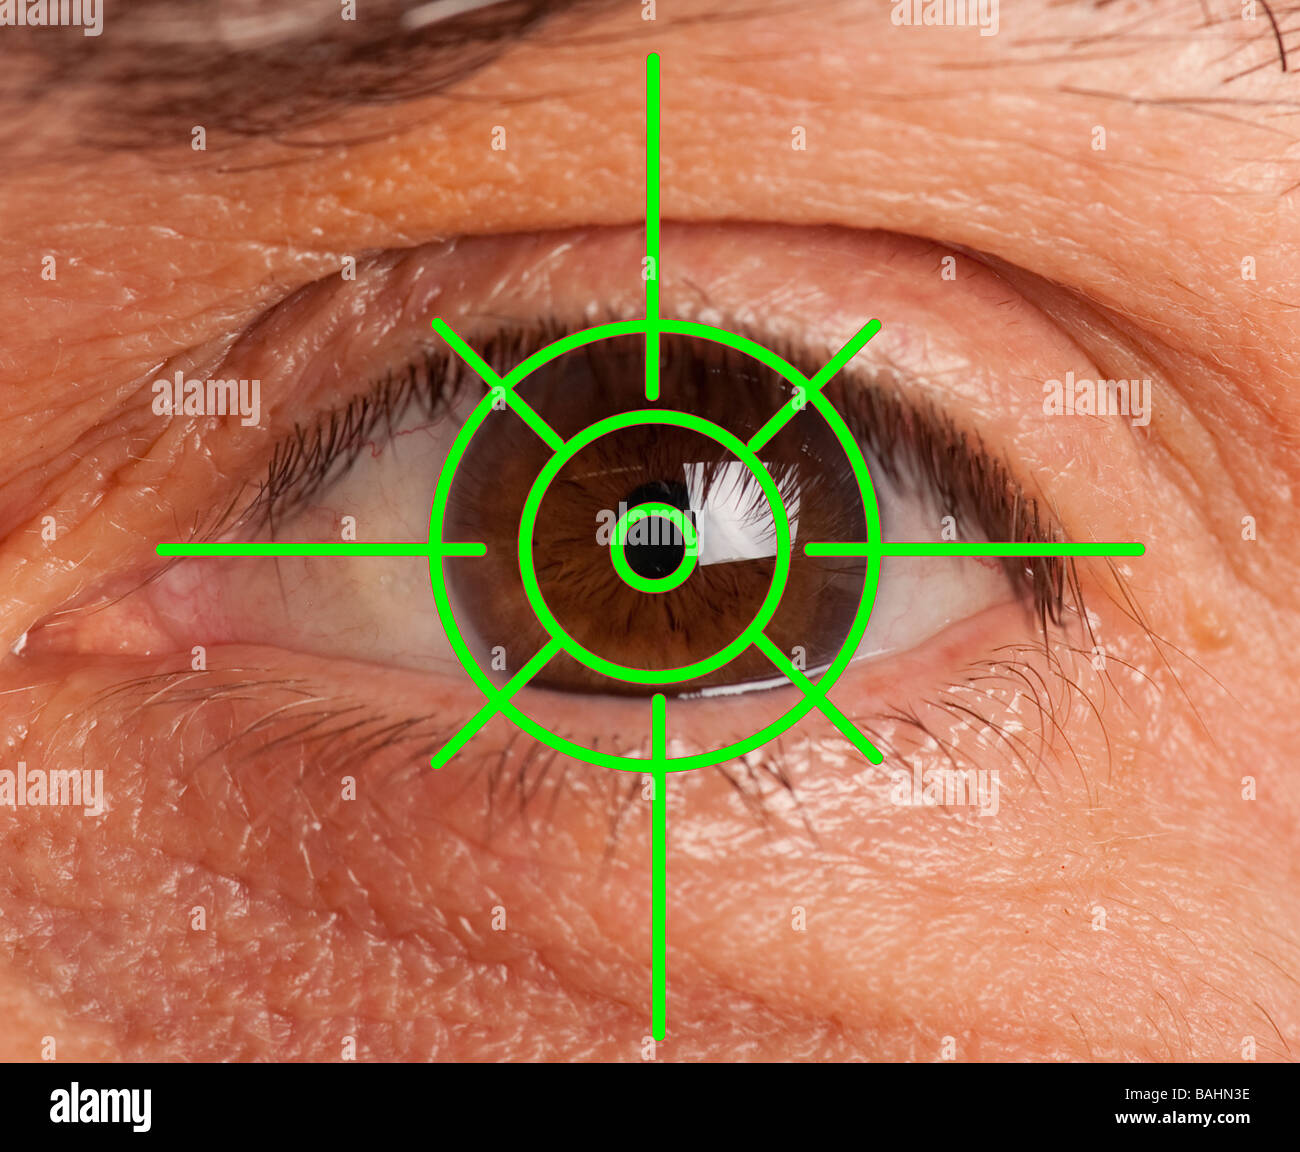 Großaufnahme Ansicht des menschlichen Auges mit Pistole Anblick Fadenkreuz Stockfoto